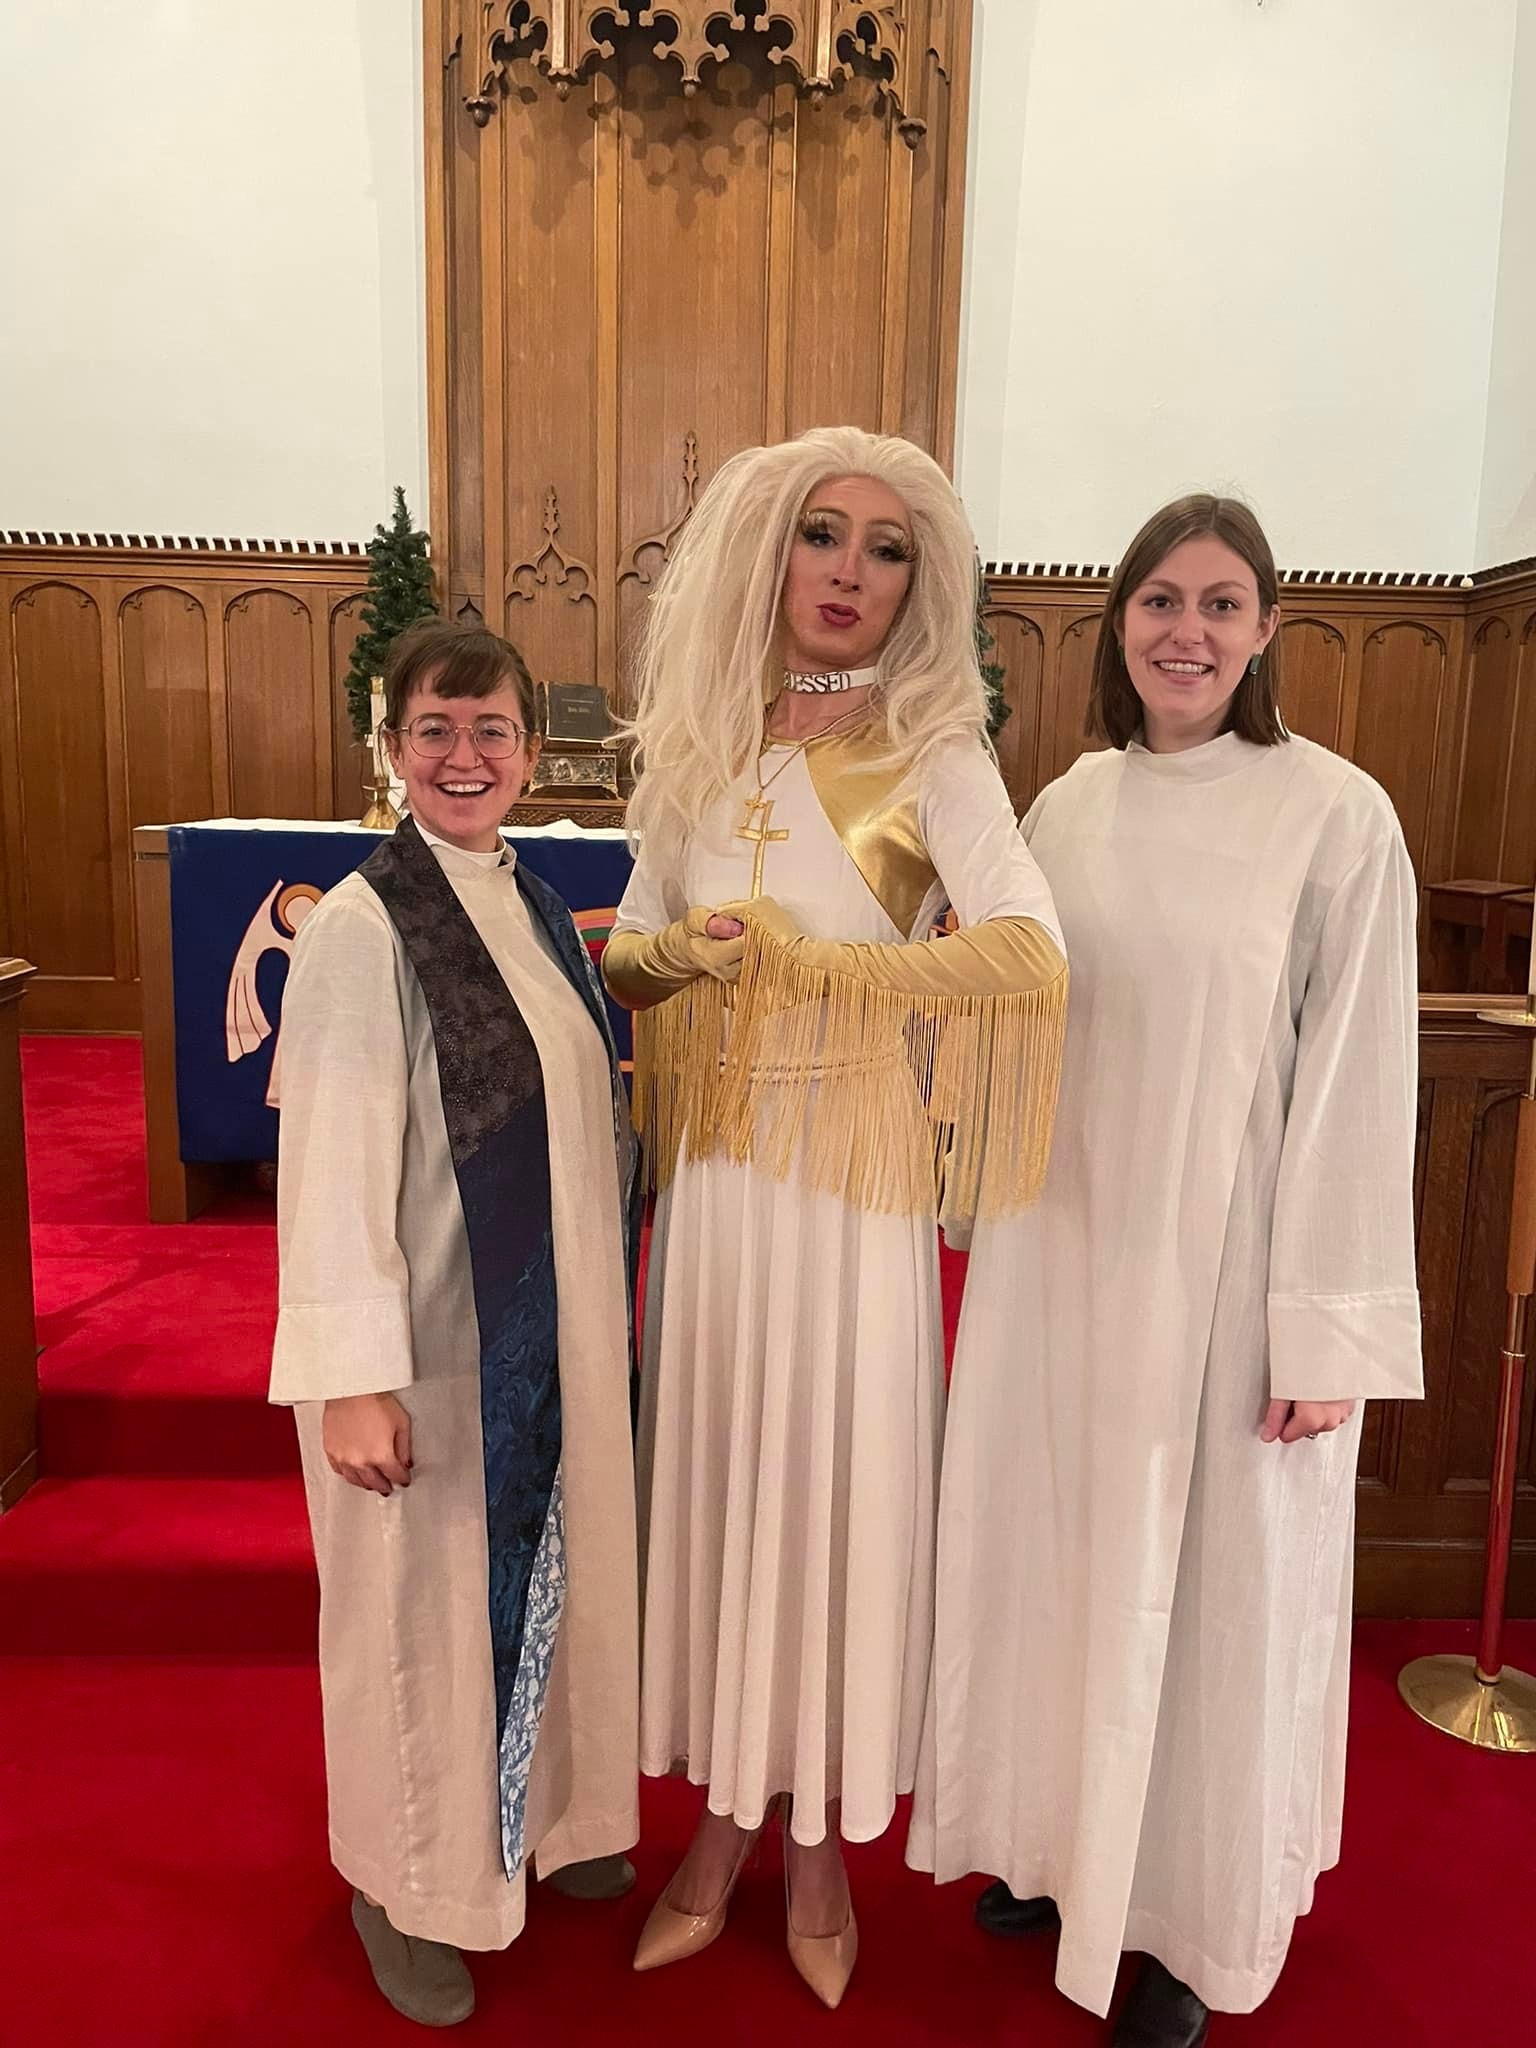 Pastor Aaron Musser faz culto vestido de drag e fala sobre igualdade na igreja  (Foto: Reprodução / Facebook)